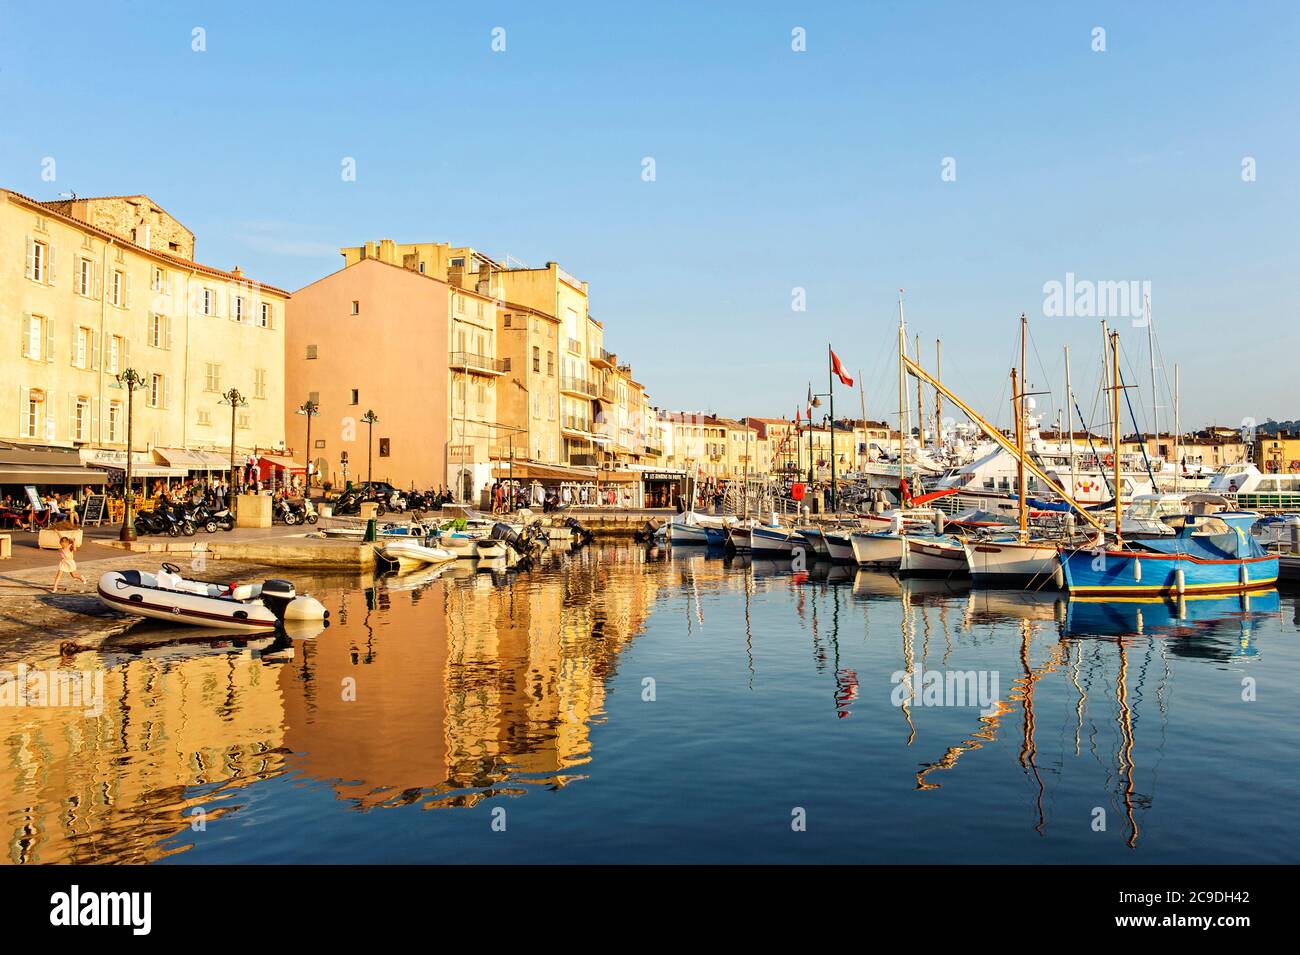 Saint Tropez - Frankreich - Europa, 25. Mai 2015: Blick auf den kleinen Hafen von Saint-Tropez in der Region Provence-Alpes-Côte d’Azur. Stockfoto